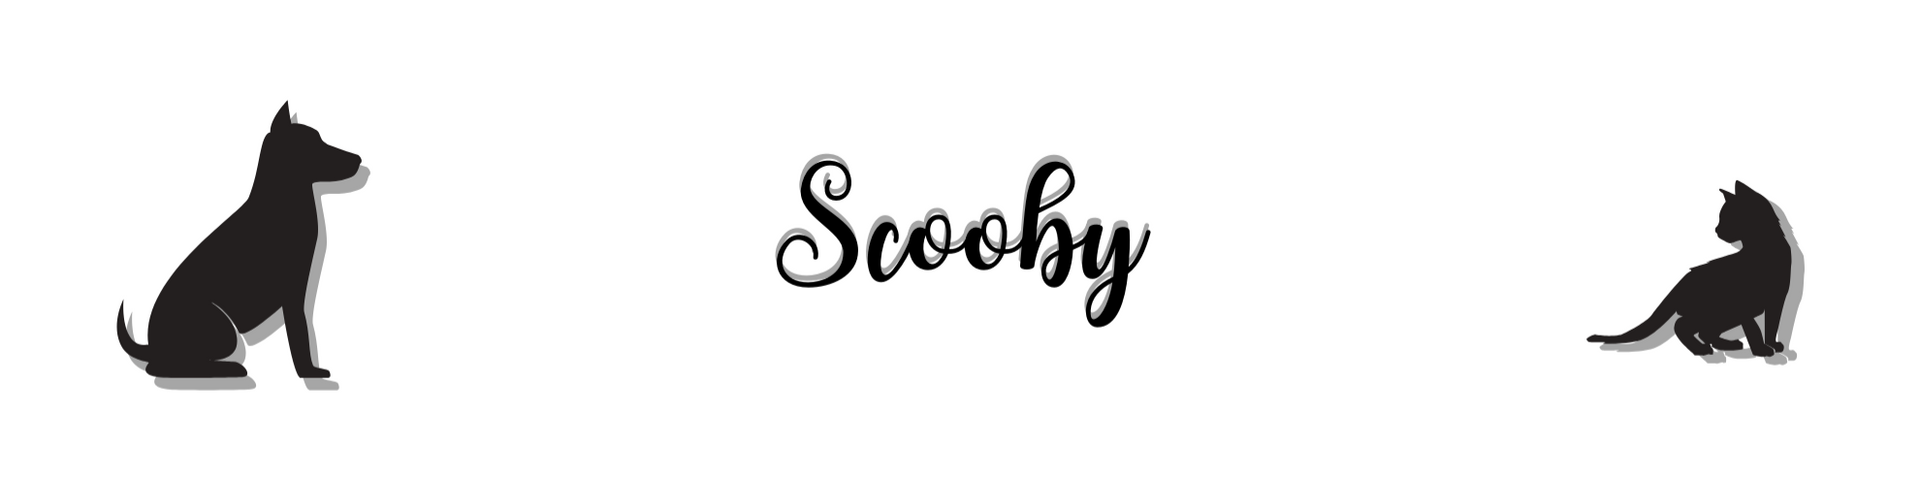 Nome da loja  Scooby